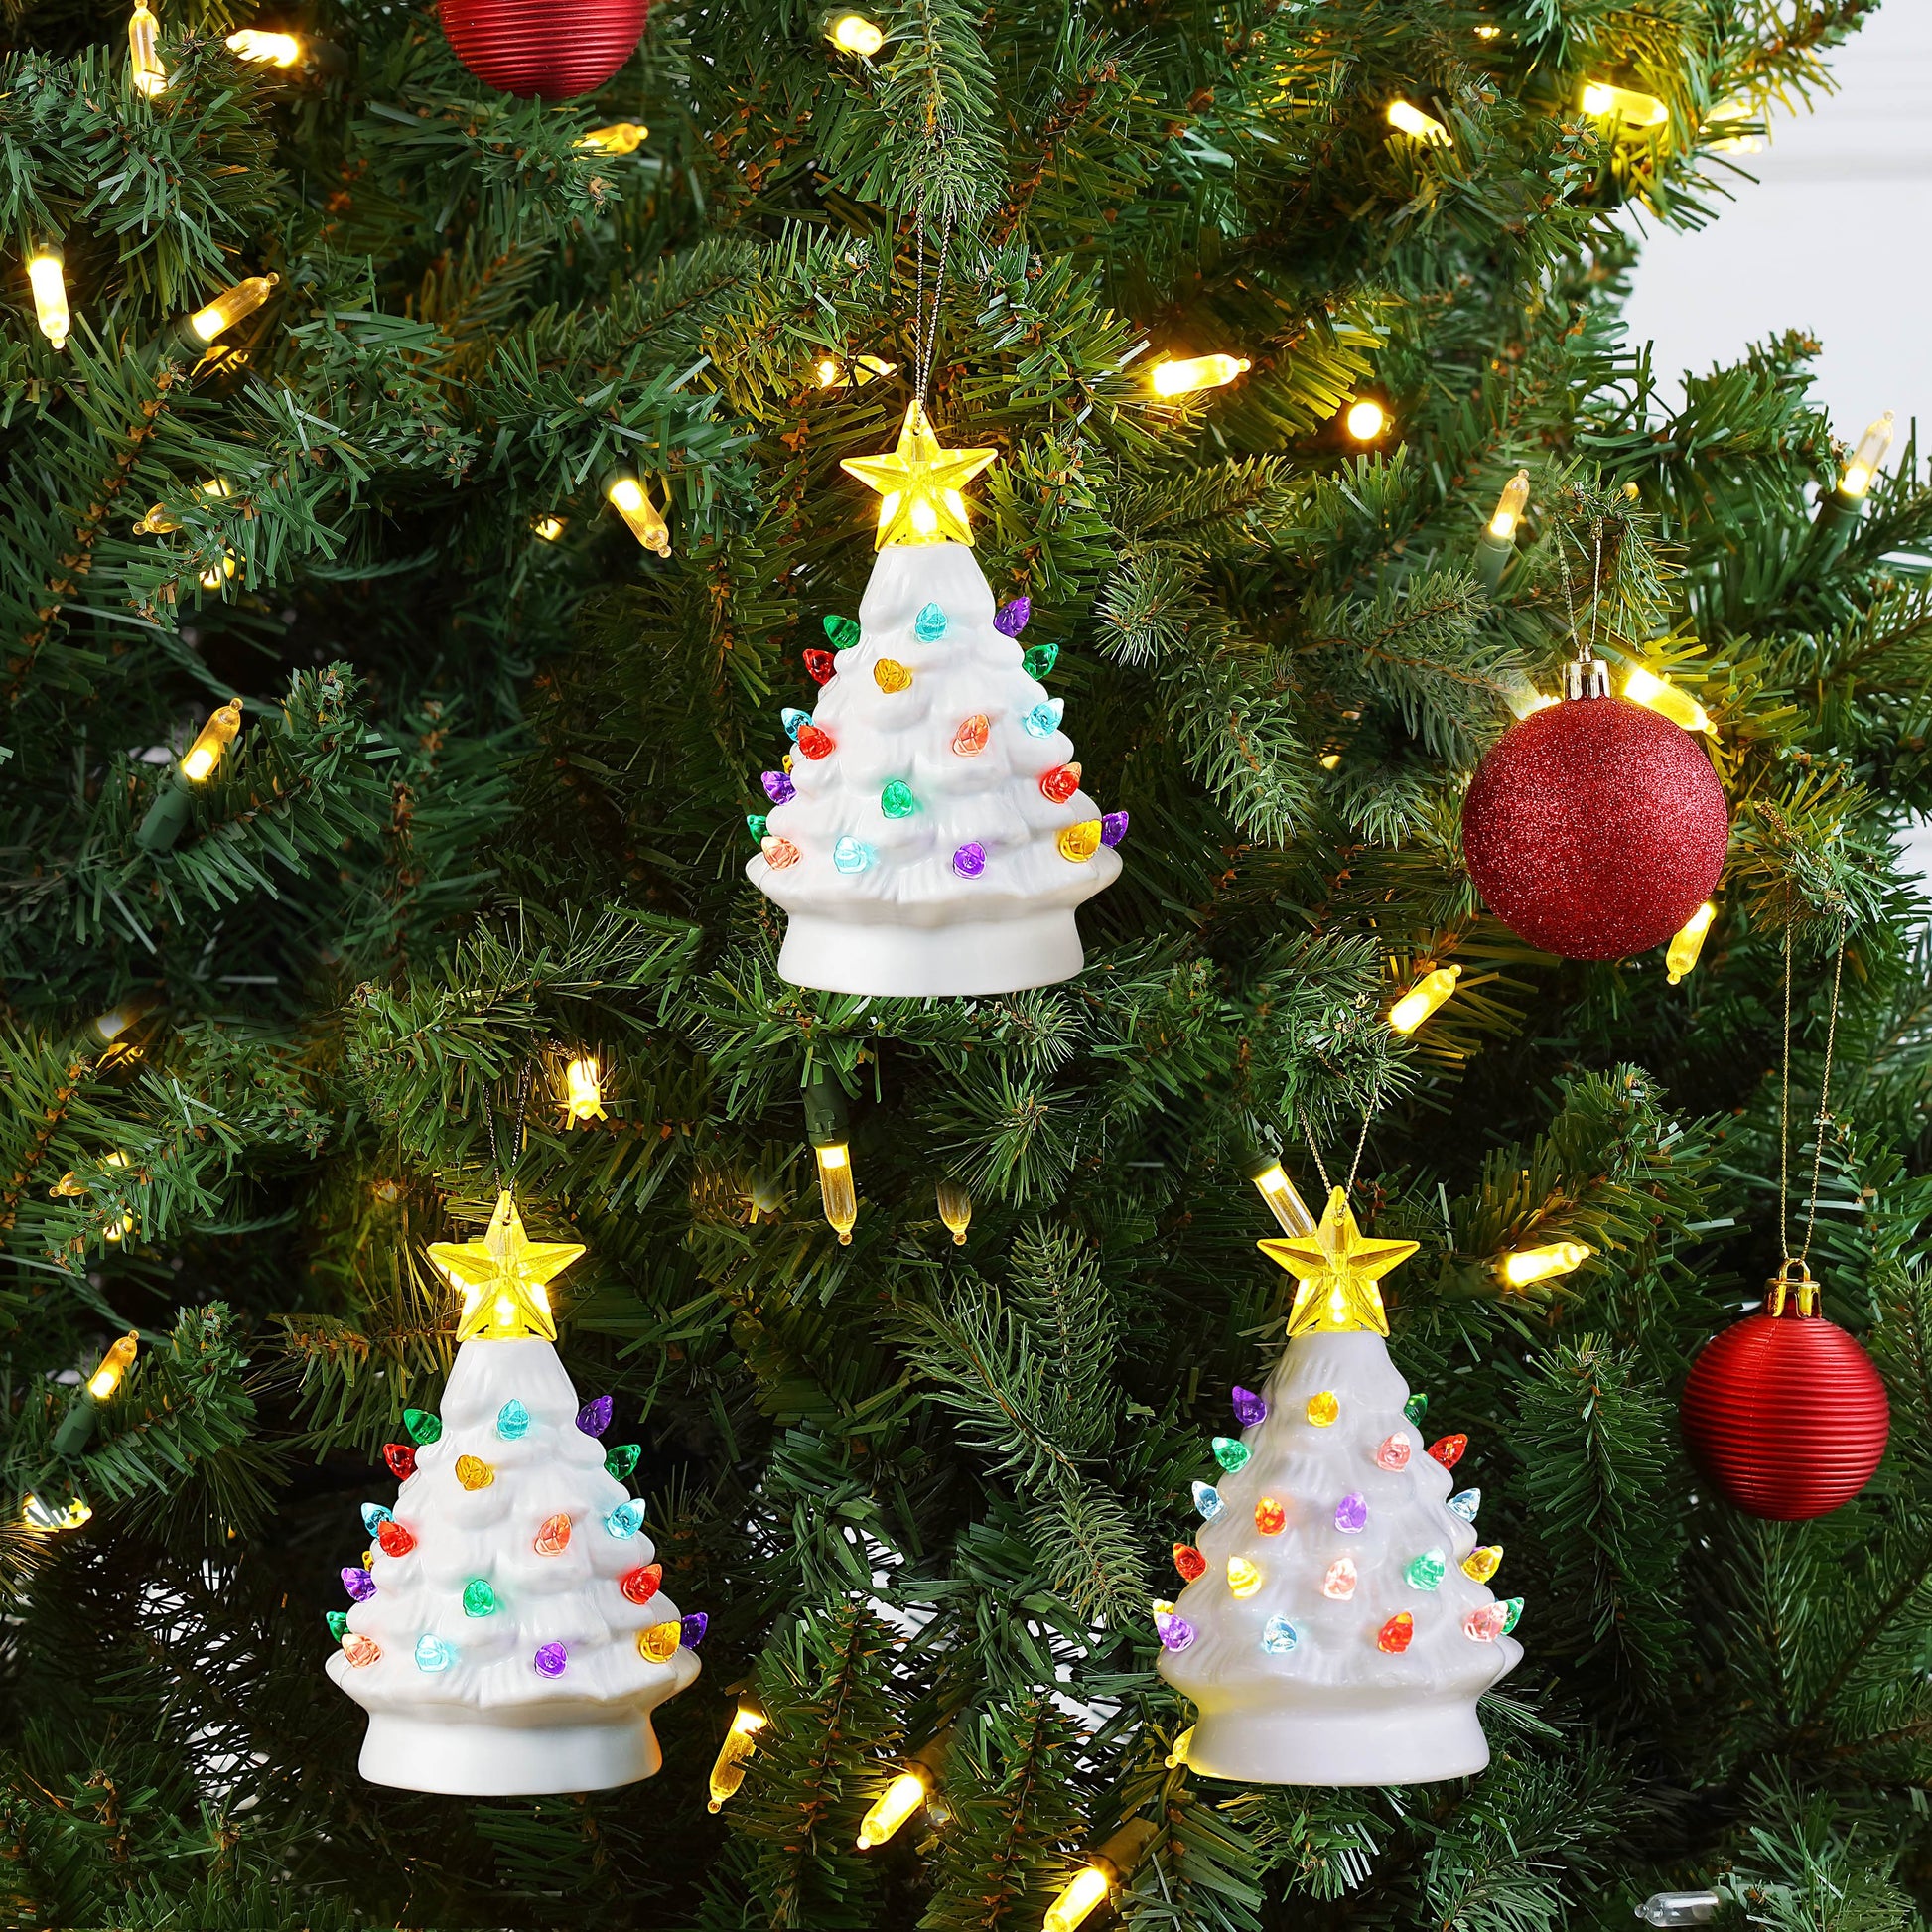 Ceramic Christmas Tree - Tabletop Christmas Tree with Lights - (11.5 inch  Medium White Christmas Tree / White Lights) - Lighted Vintage Ceramic Tree